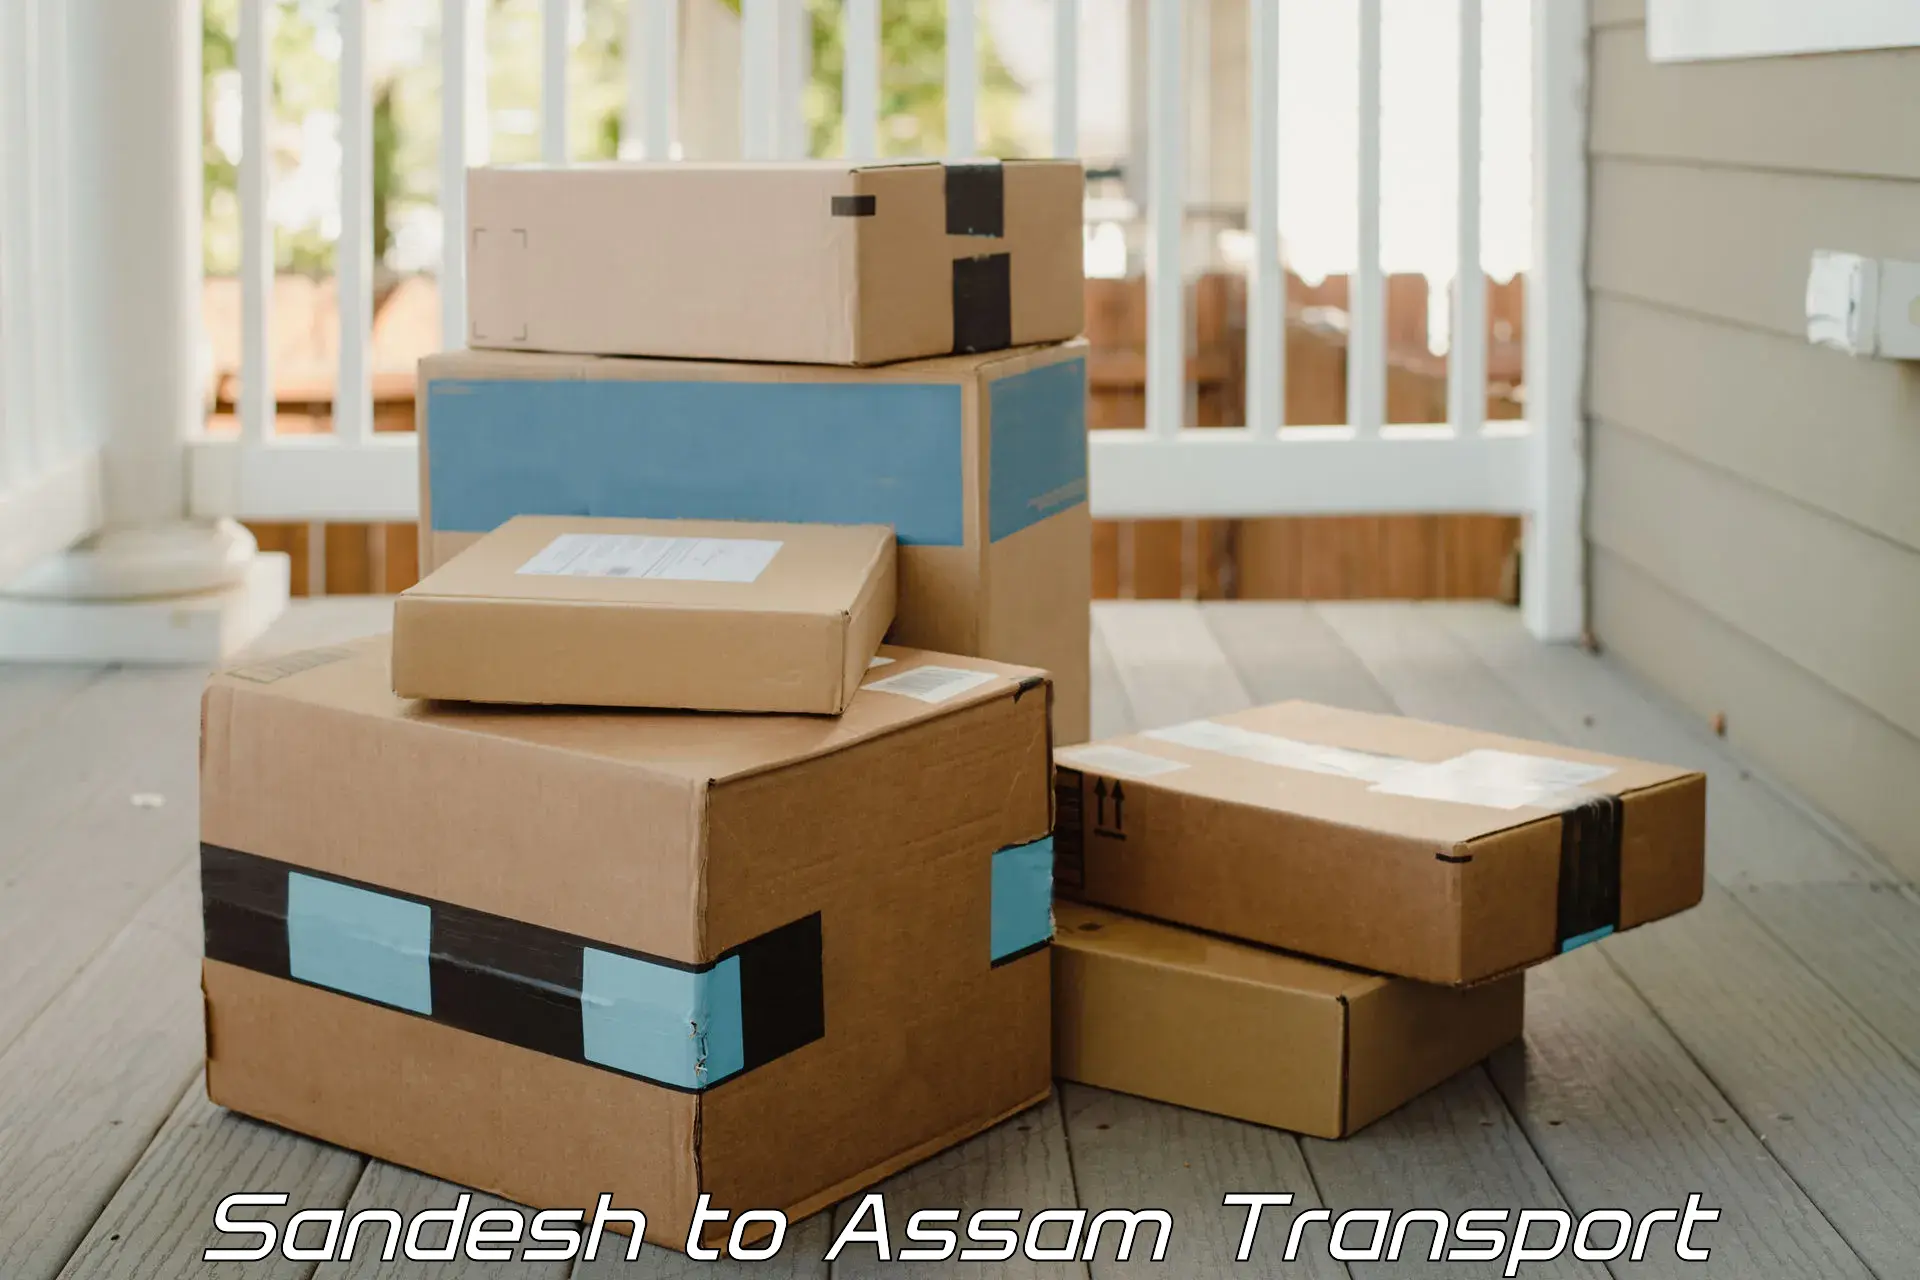 Furniture transport service Sandesh to Assam